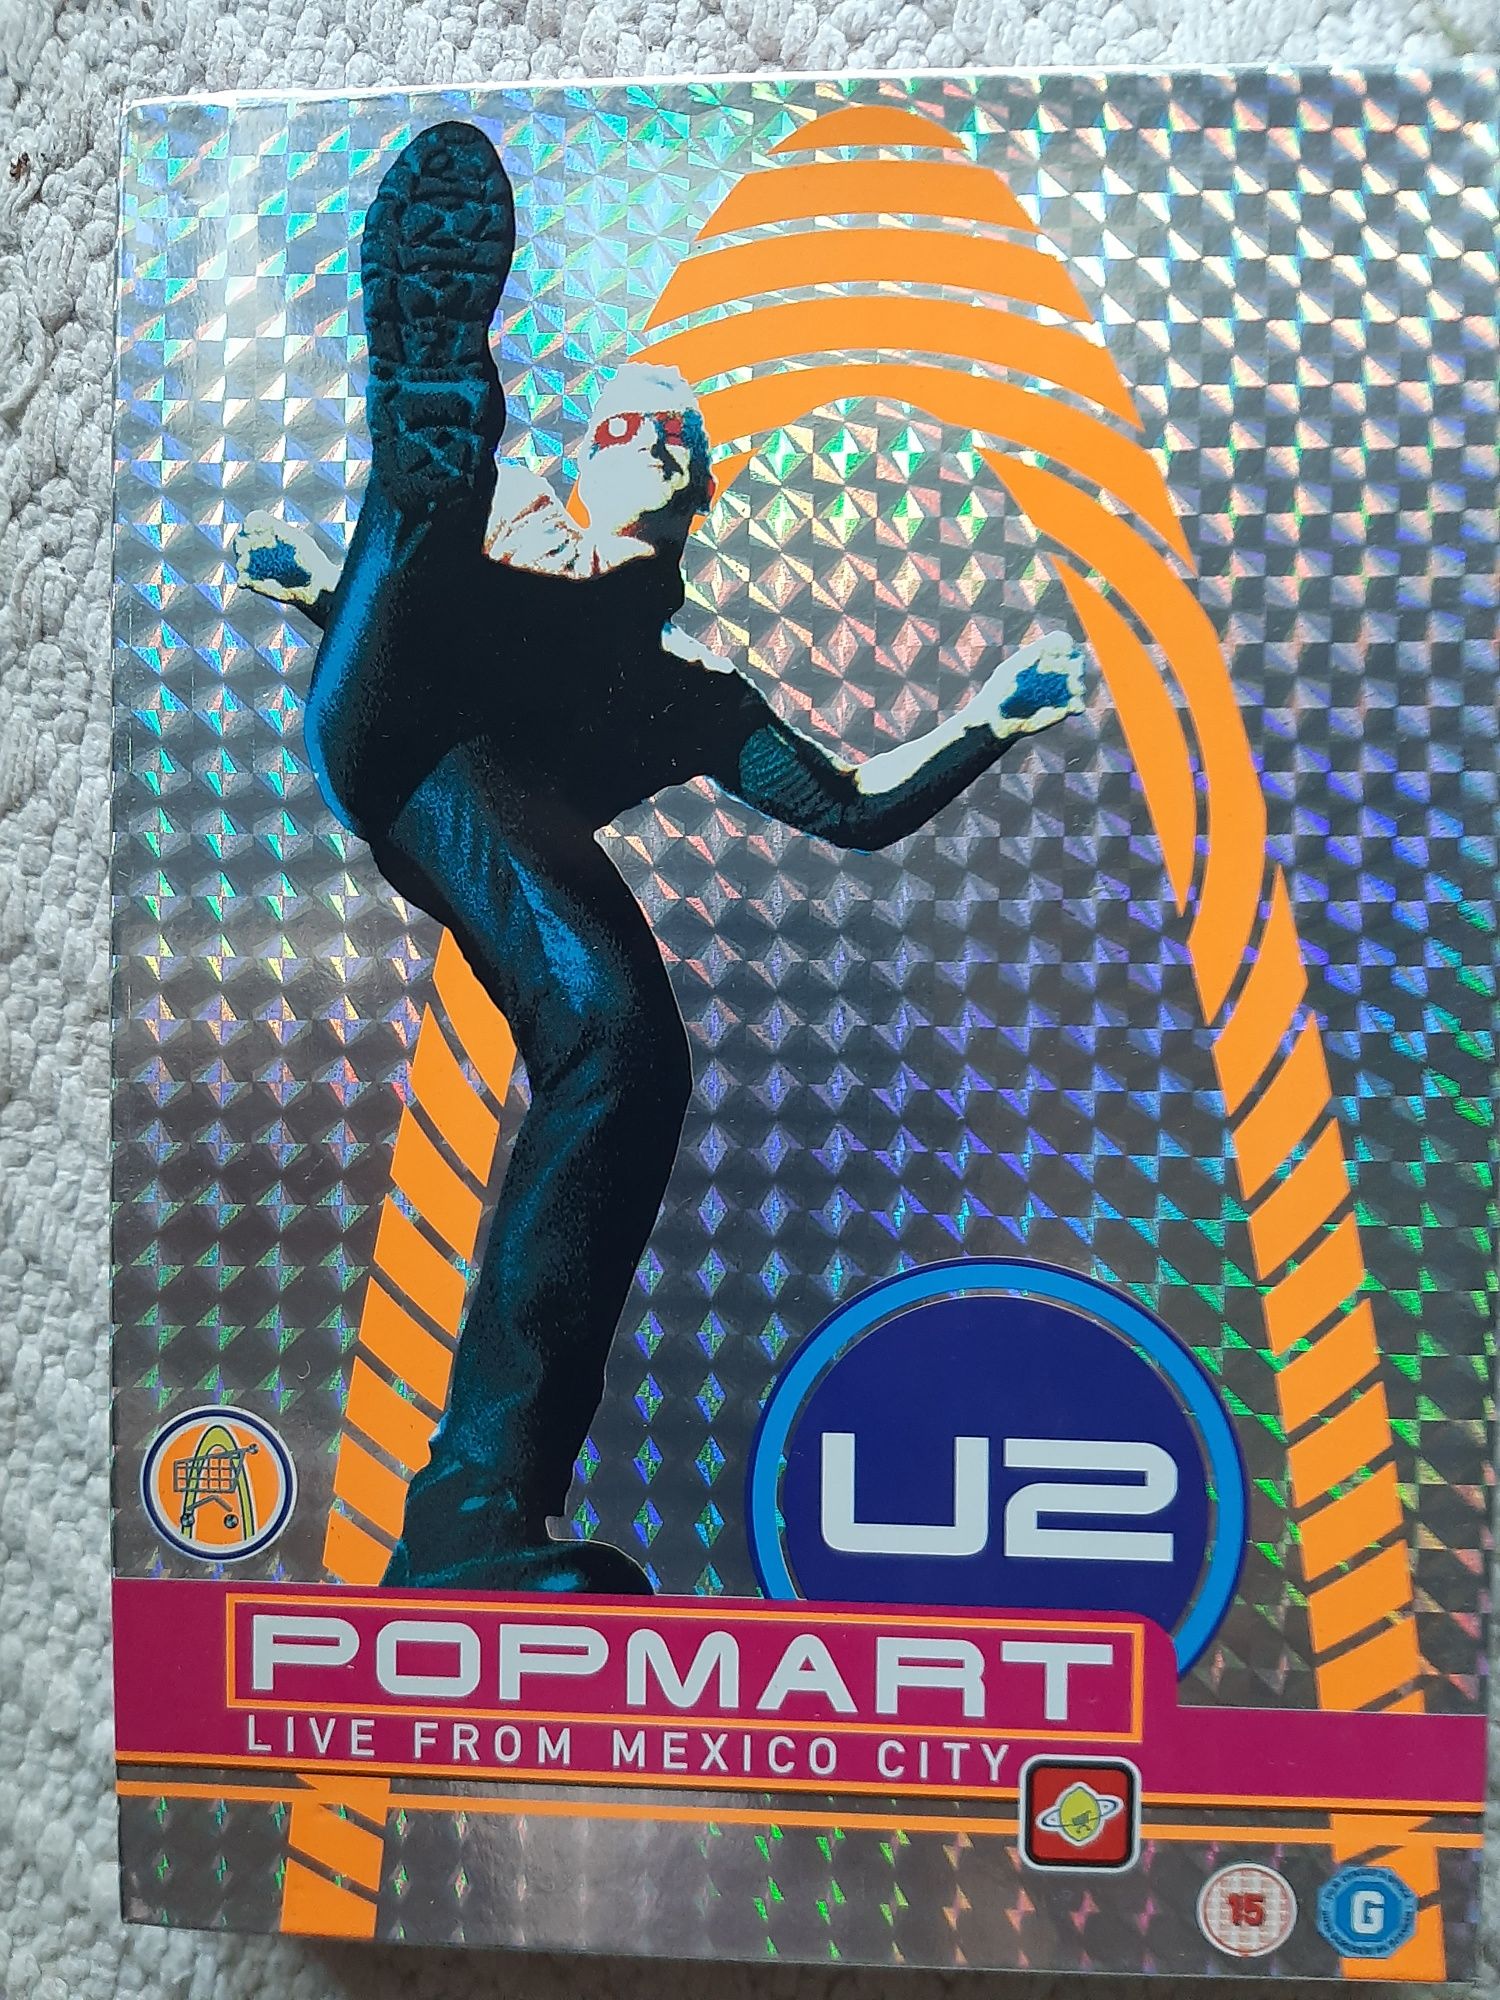 DVD U2 Popmart live